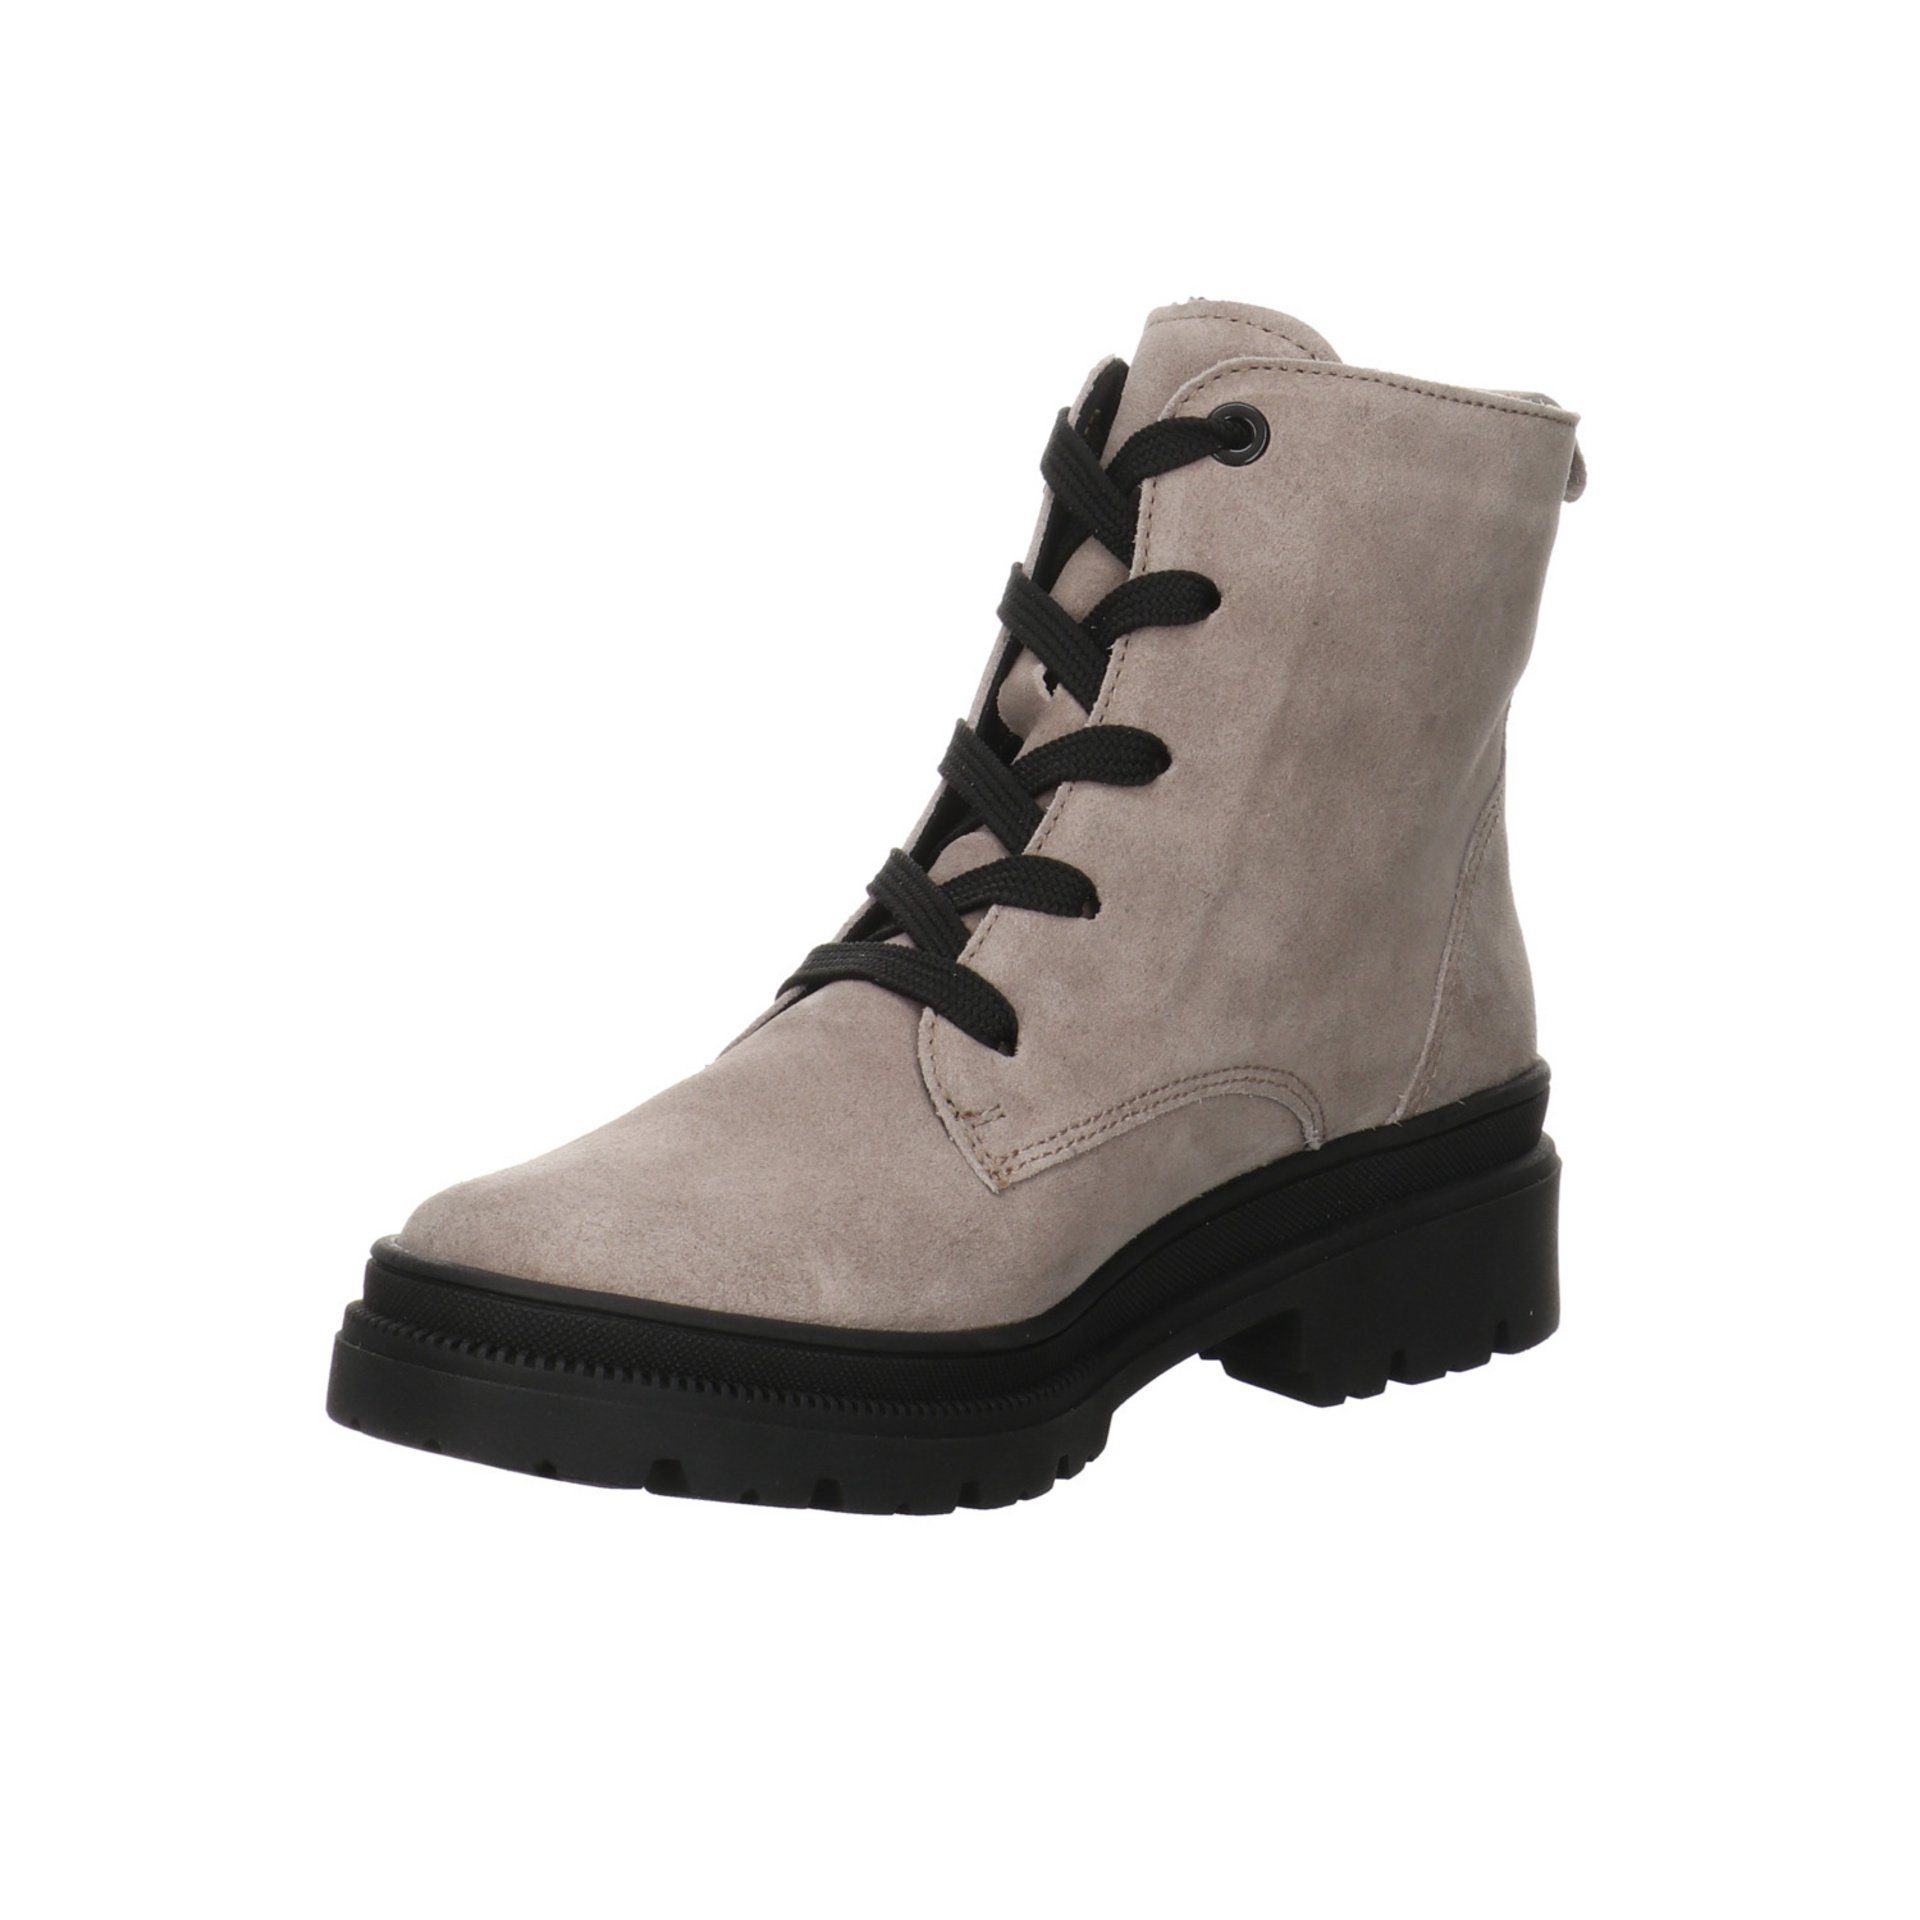 Ara Damen Stiefeletten Schuhe Dover Boots Schnürstiefelette Veloursleder beige 046680